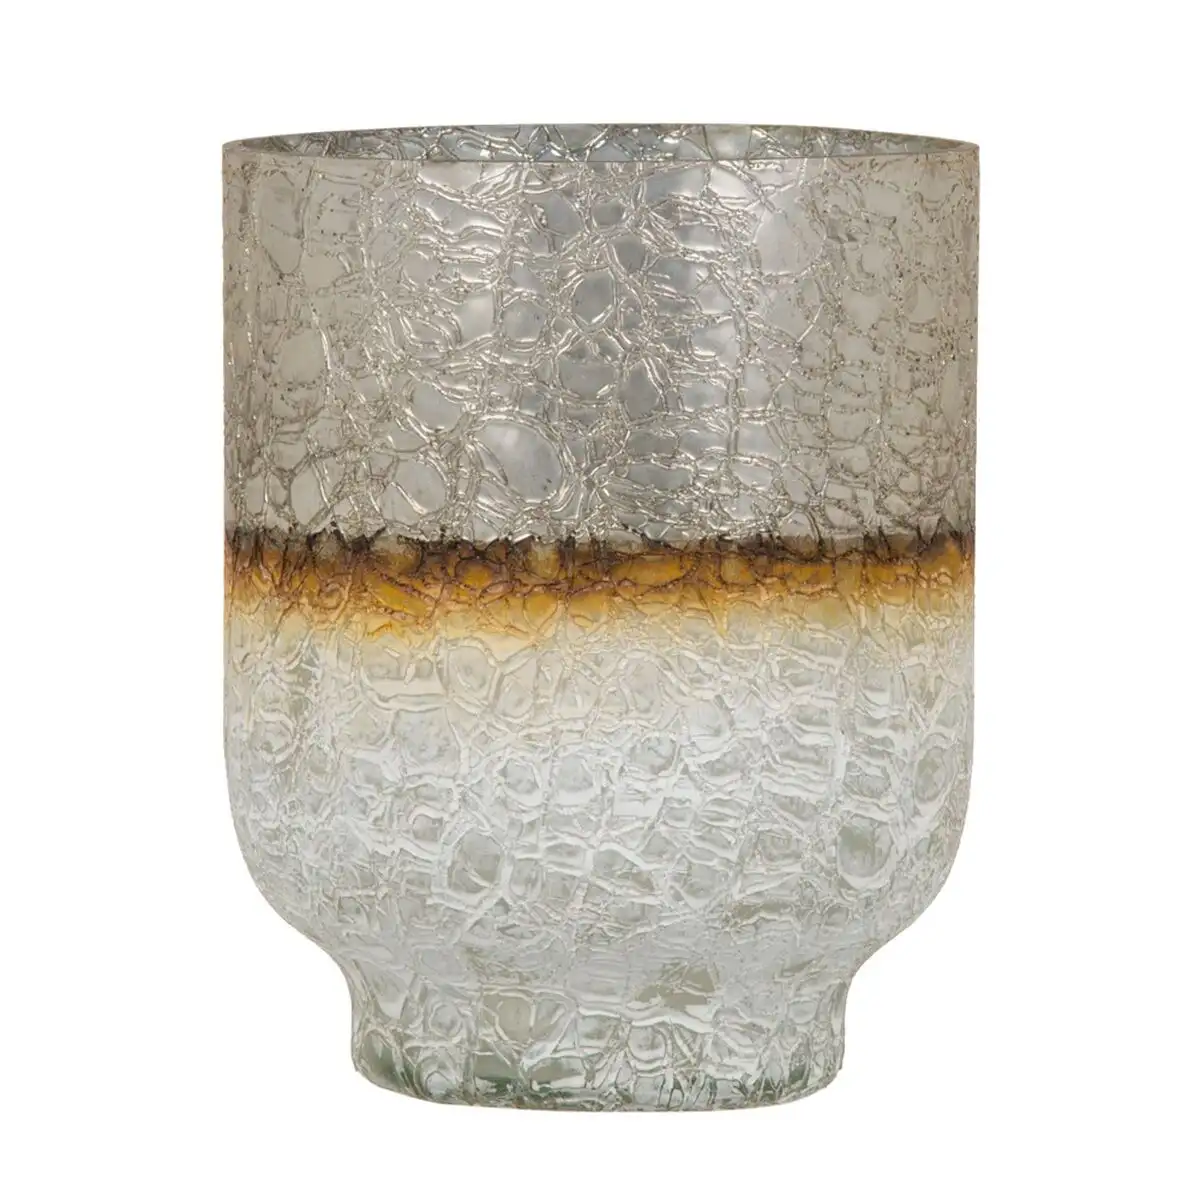 Vase cristal dore blanc 15 x 15 x 19 cm_6146. DIAYTAR SENEGAL - Là où la Diversité Rencontre la Qualité. Parcourez notre gamme complète et trouvez des produits qui incarnent la richesse et l'unicité du Sénégal.